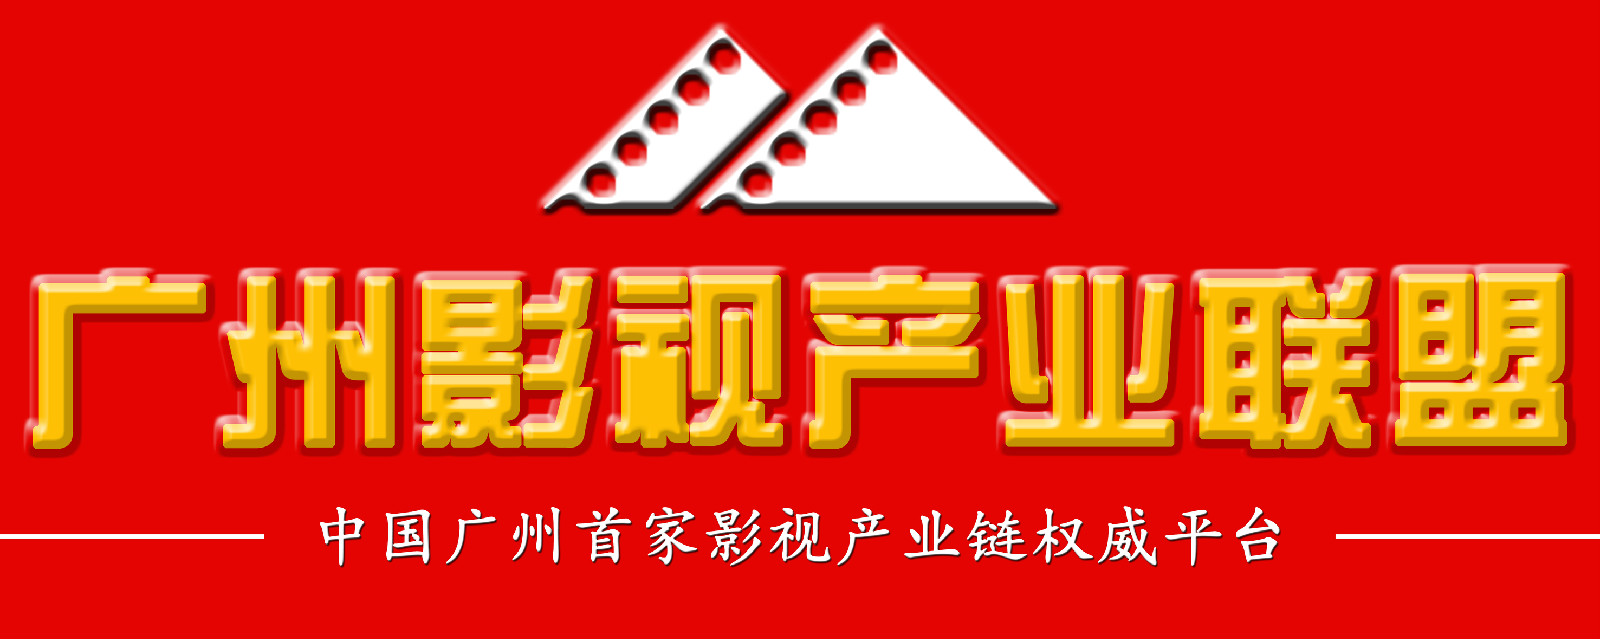 廣州影視產業聯盟